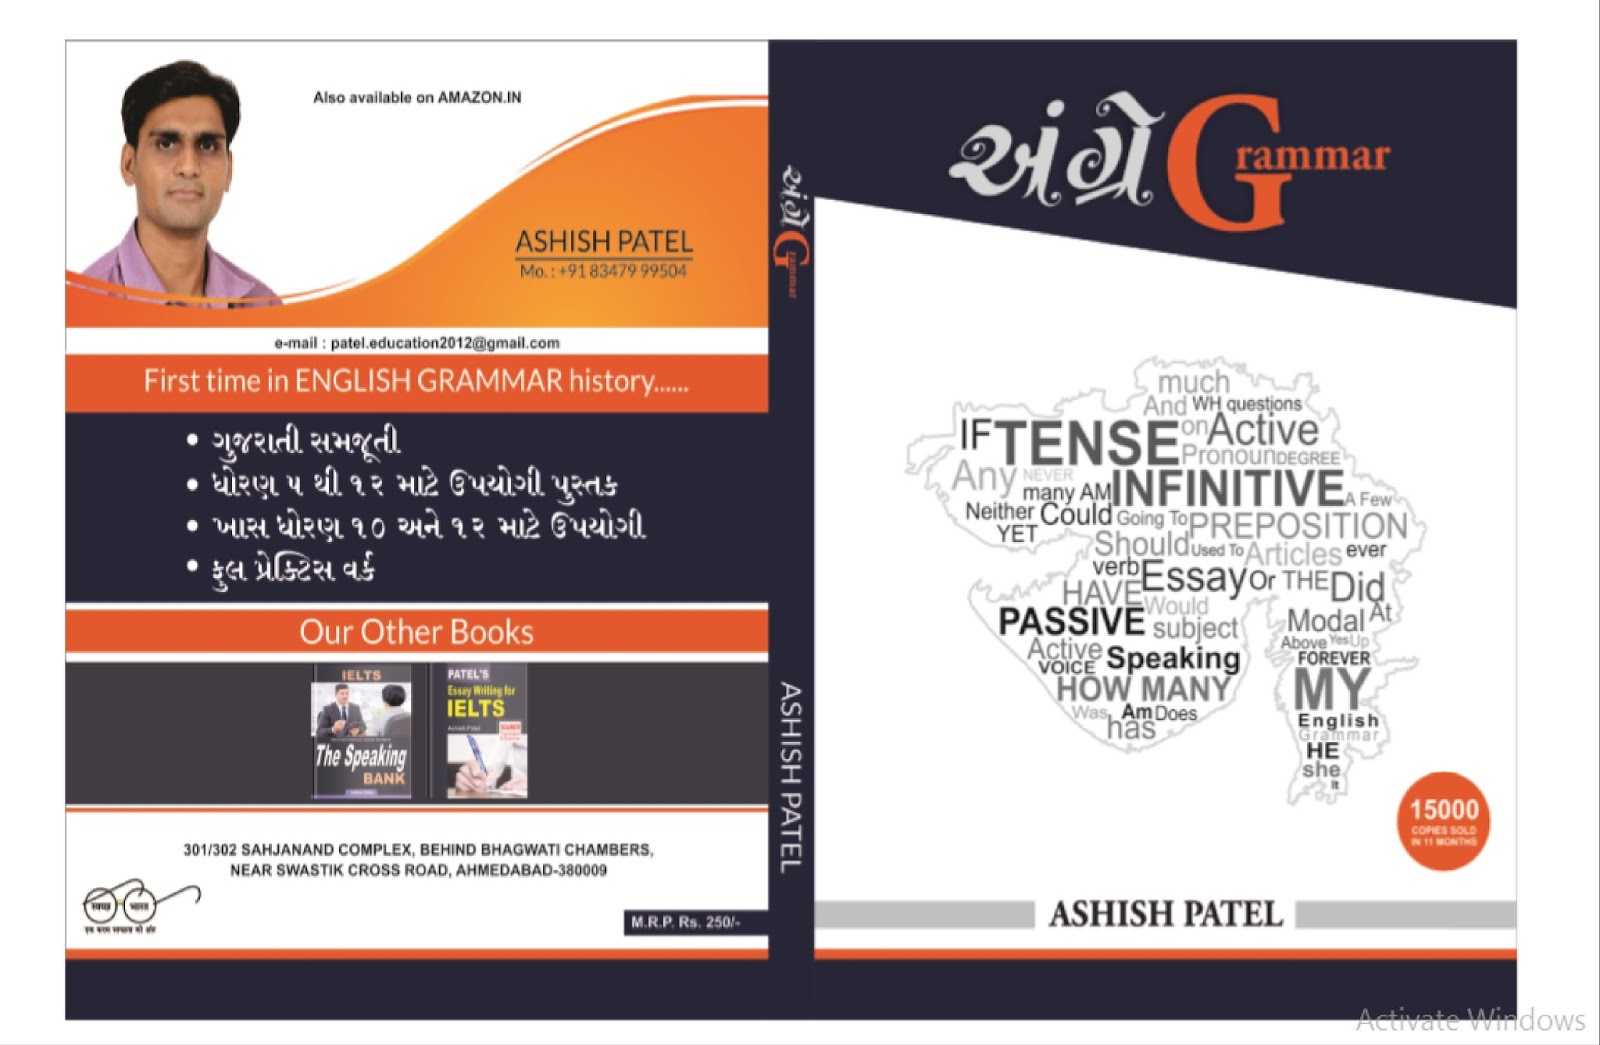 a h patel book pdf free download